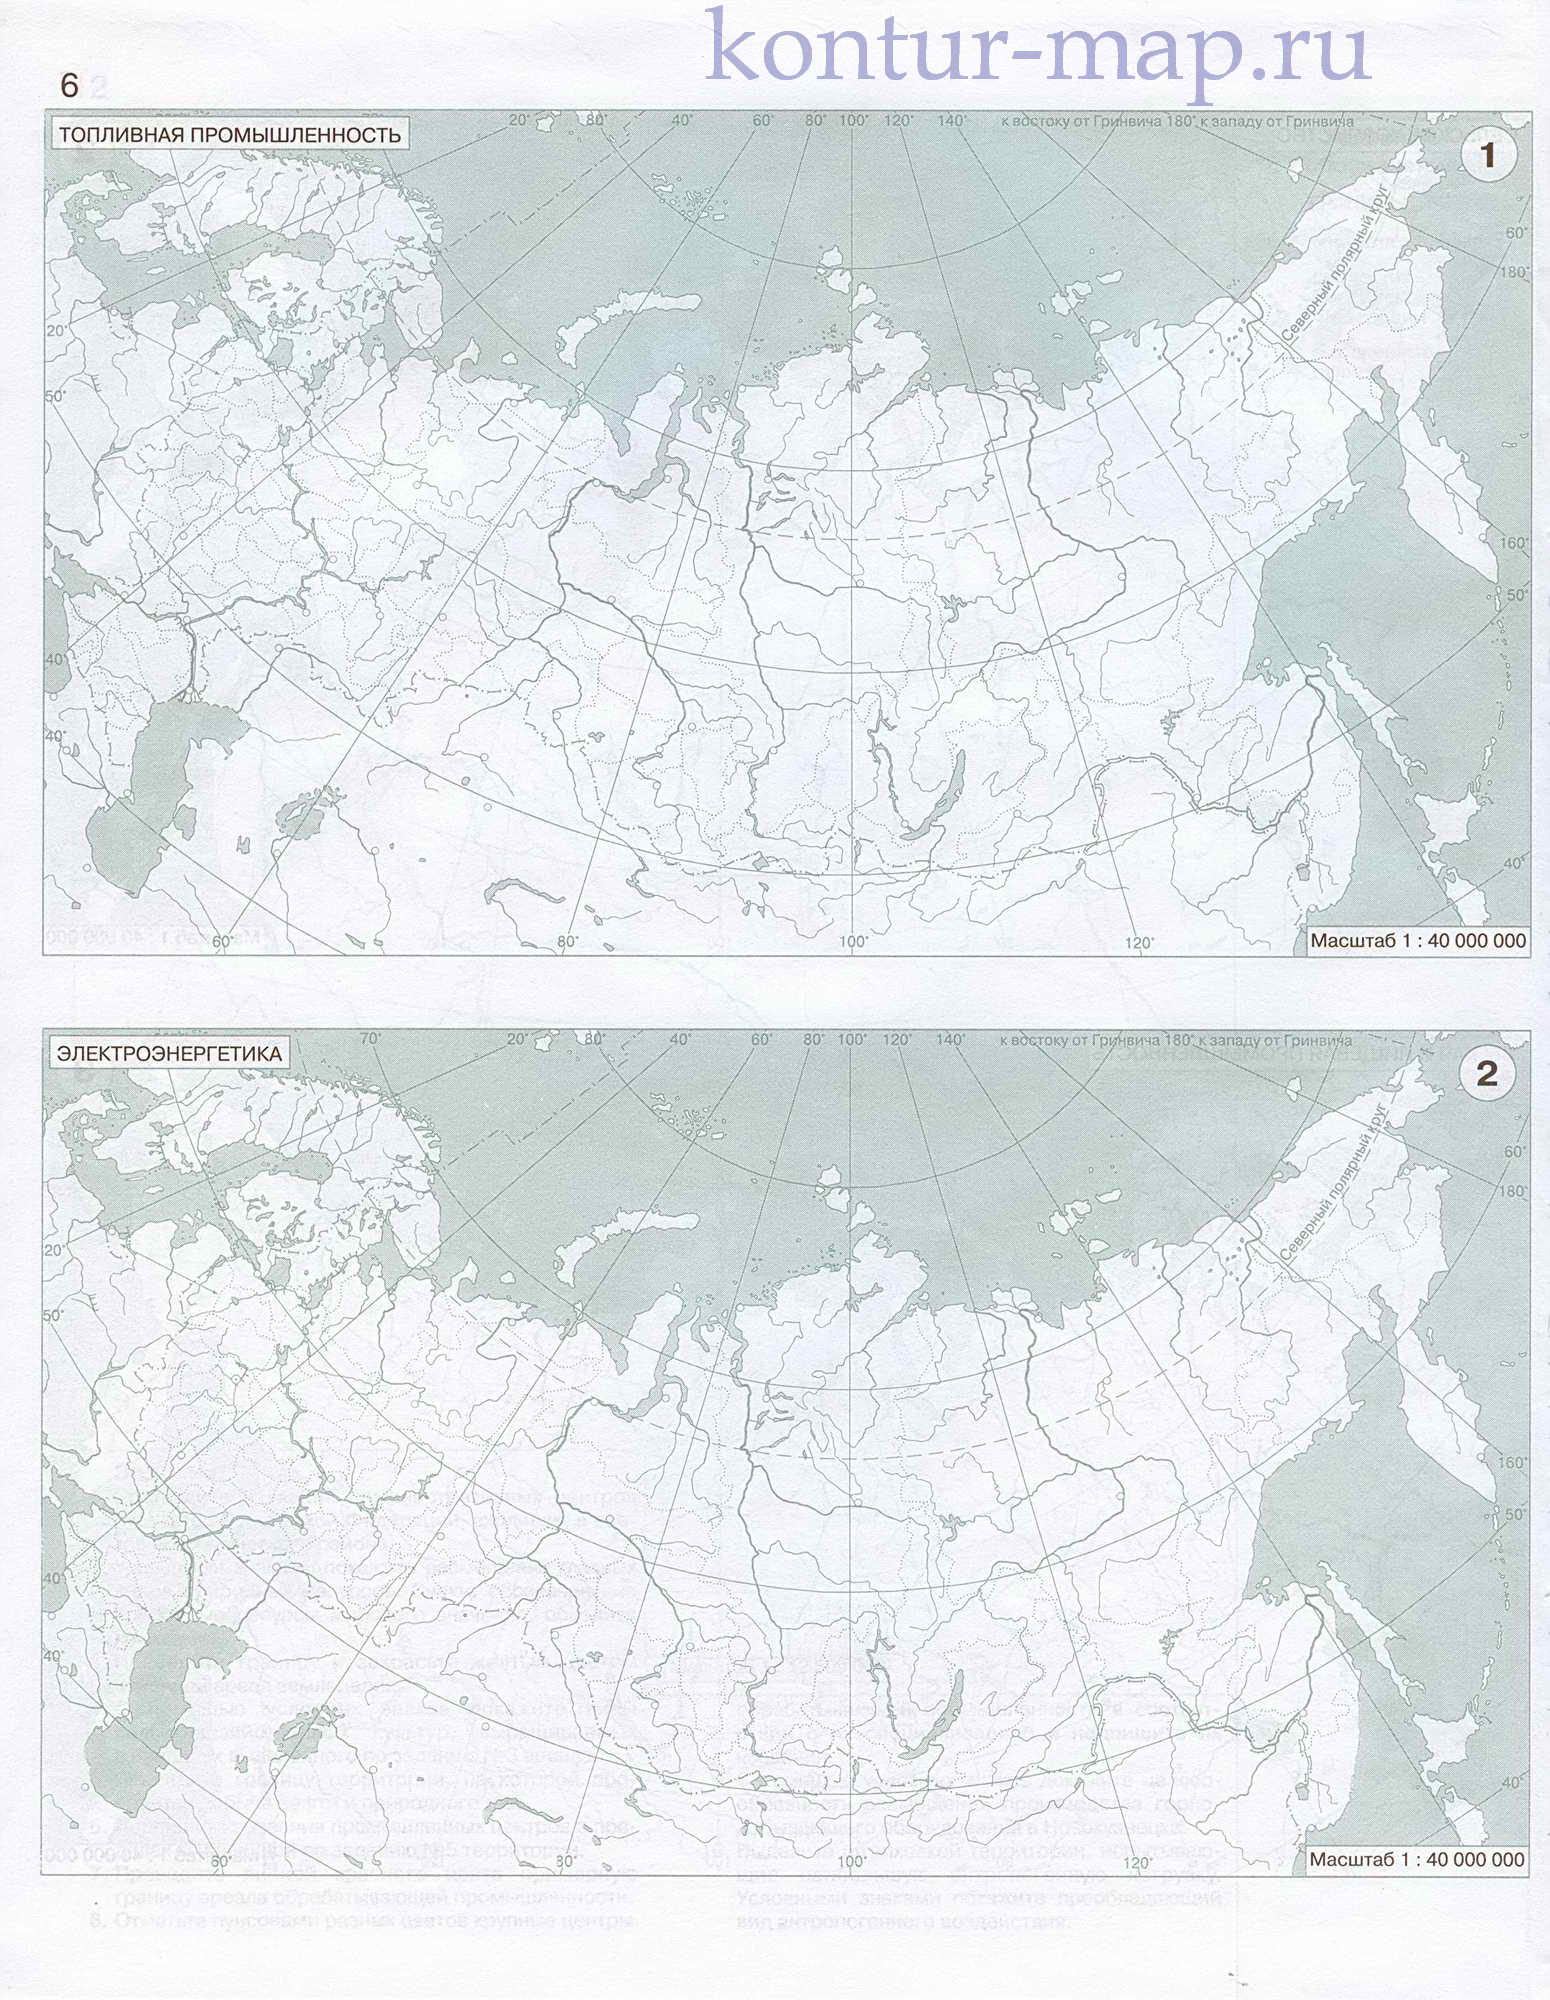 Контурная карта России: топливная промышленность, электроэнергетика, металлургия. Контурная карта России - 9 класс, A0 - 